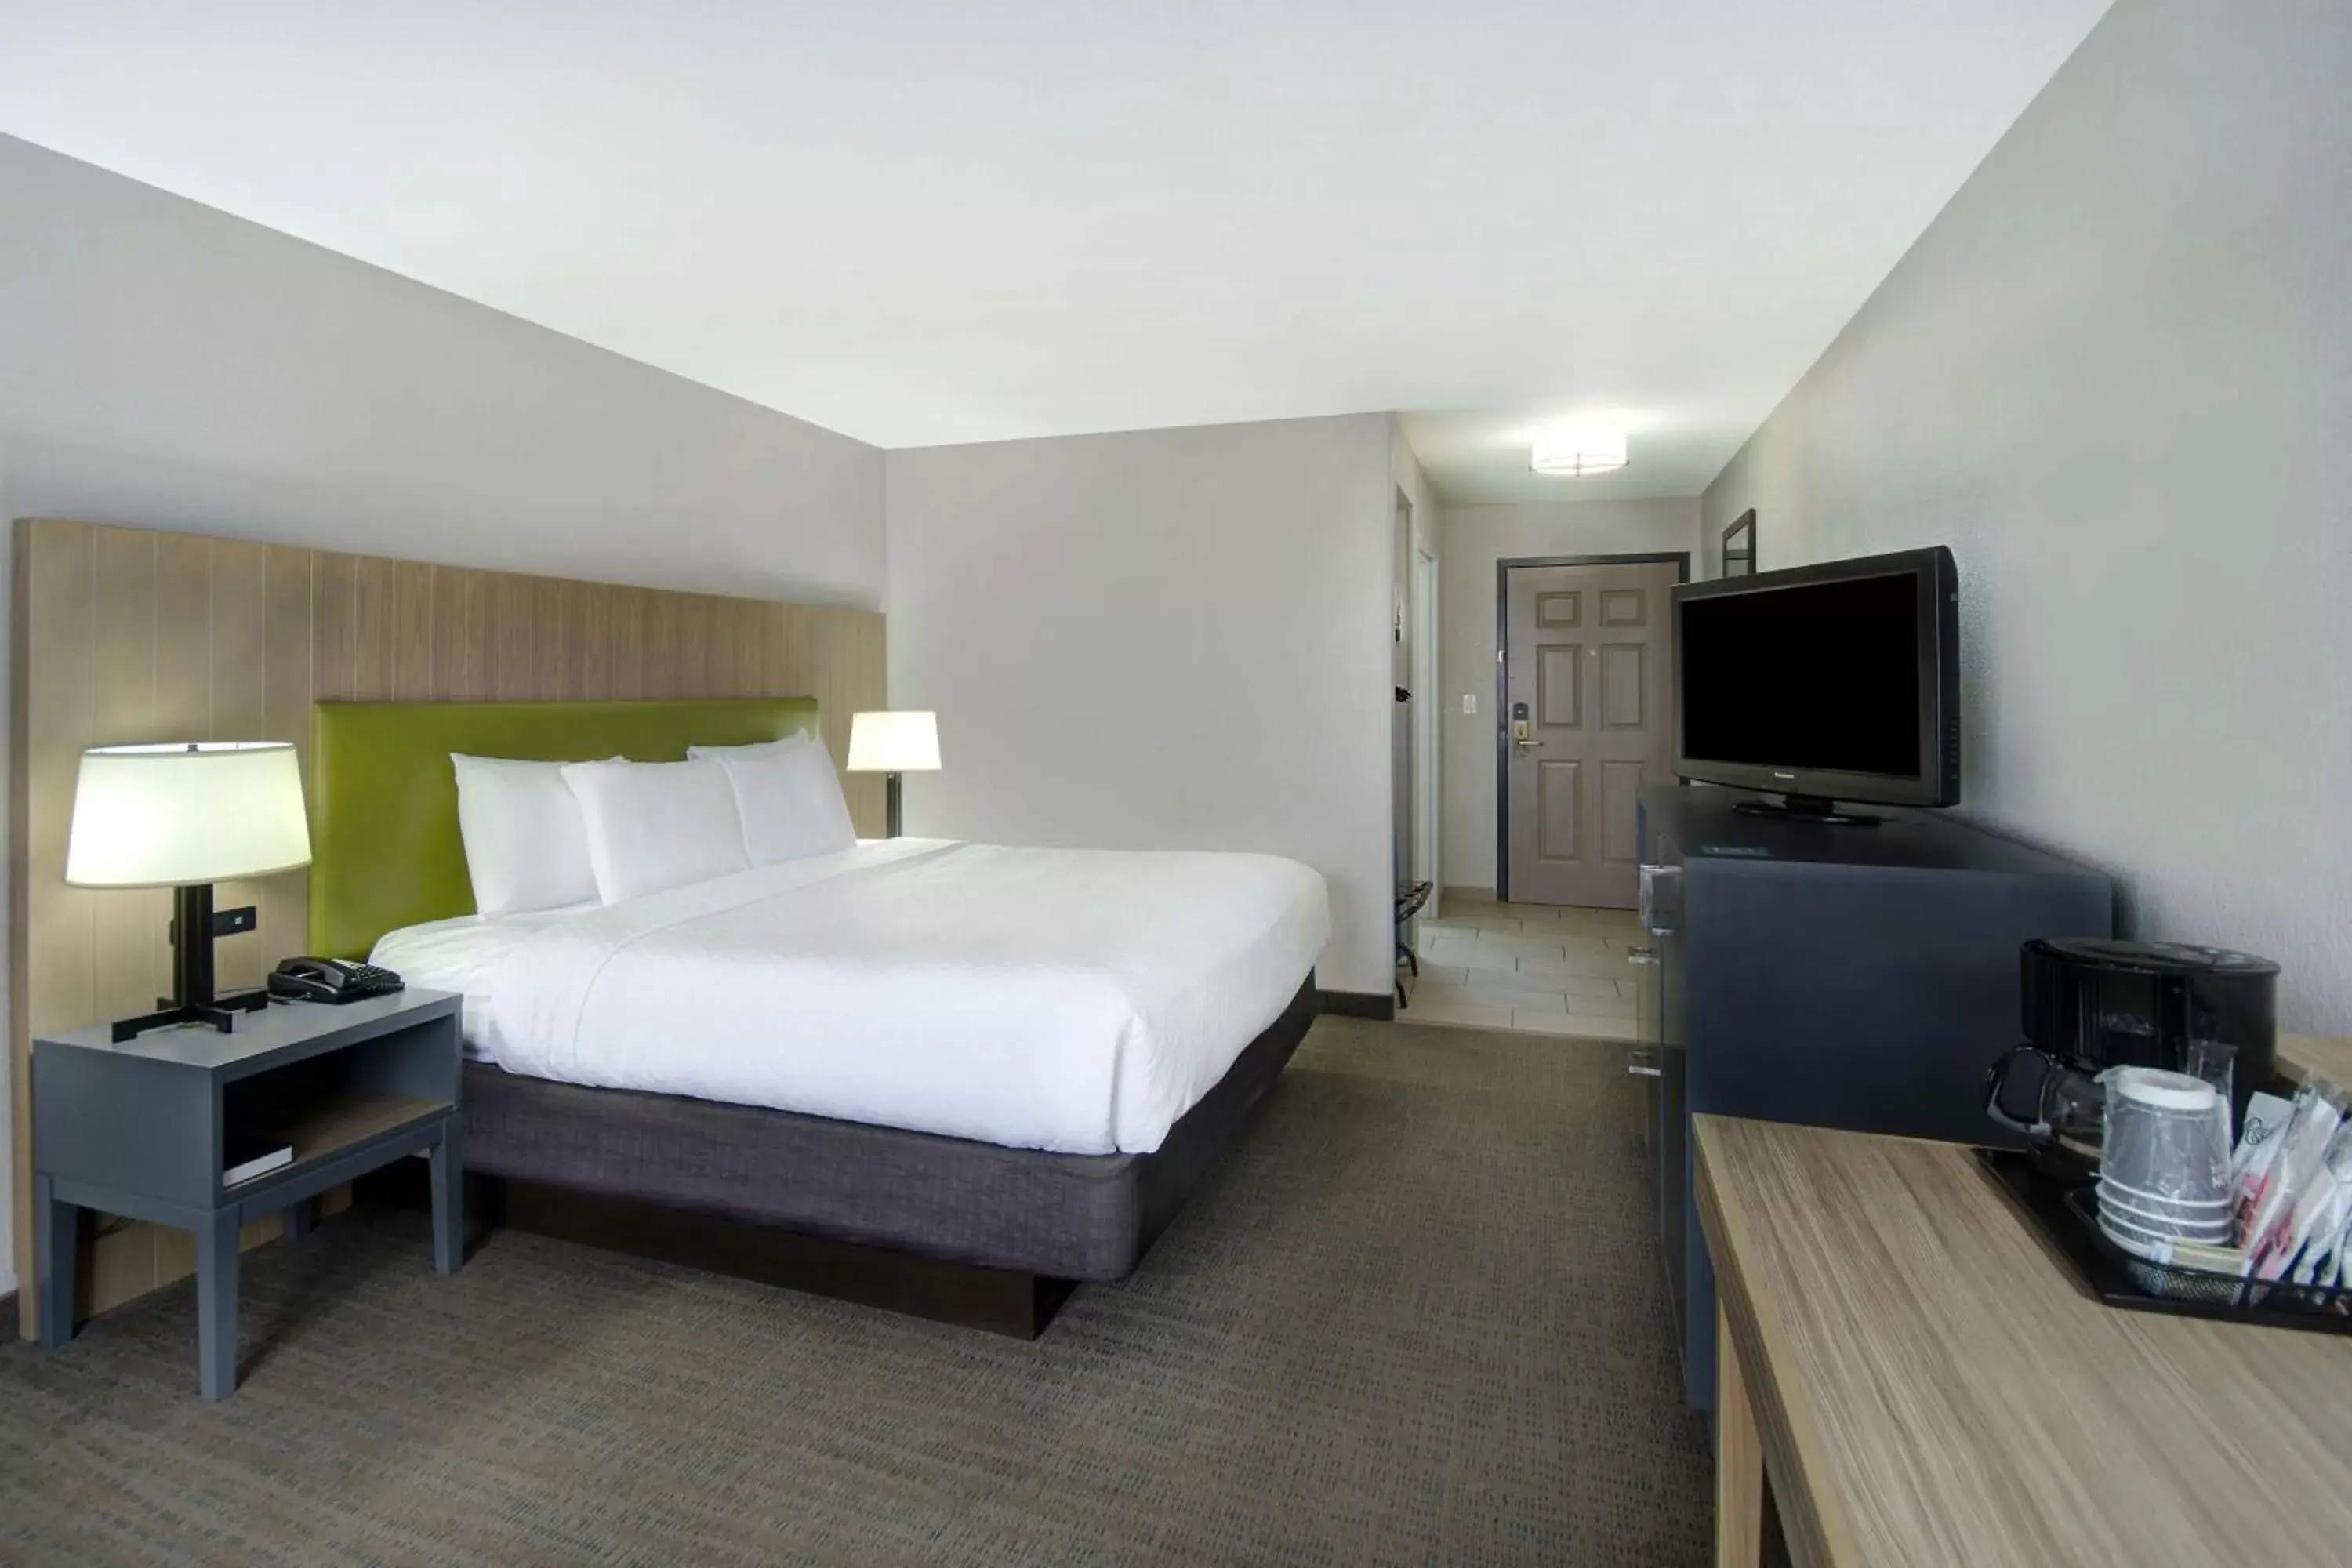 Bedroom in Country Inn & Suites by Radisson, Cincinnati Airport, KY